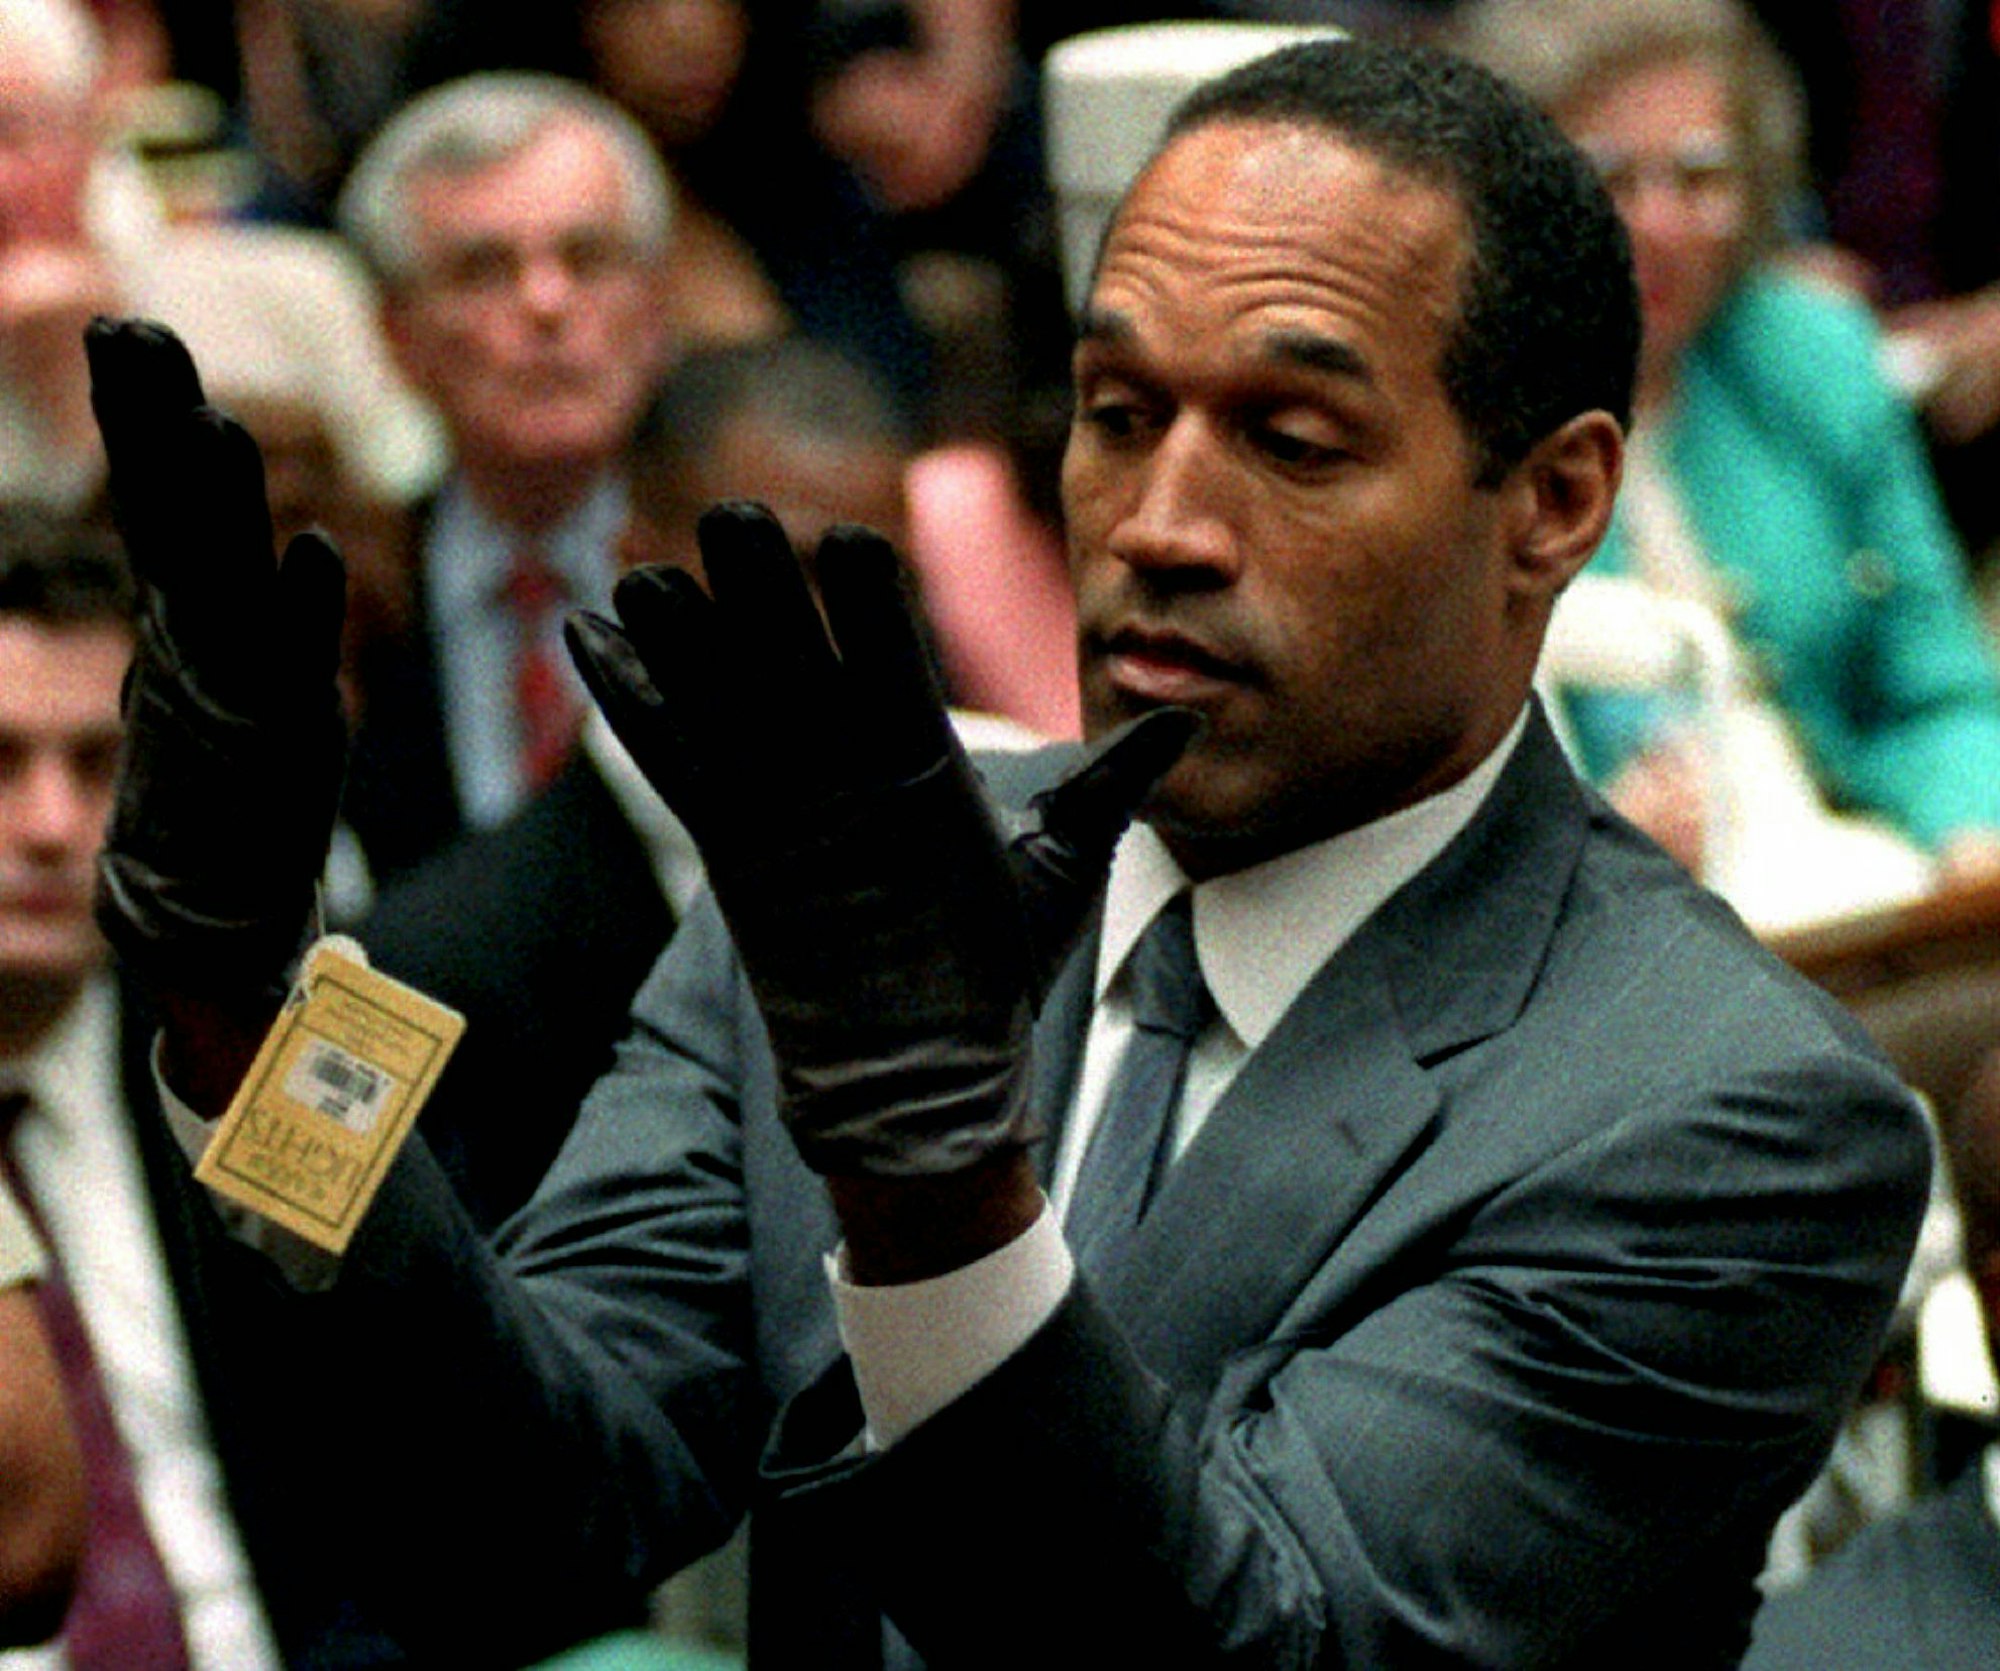 O.J. Simpson betrachtet in seinem Prozess 1995 ein neues Paar Aris-Handschuhe, die er während seines Doppelmordprozesses auf Geheiß der Staatsanwaltschaft vor den Geschworenen anziehen musste